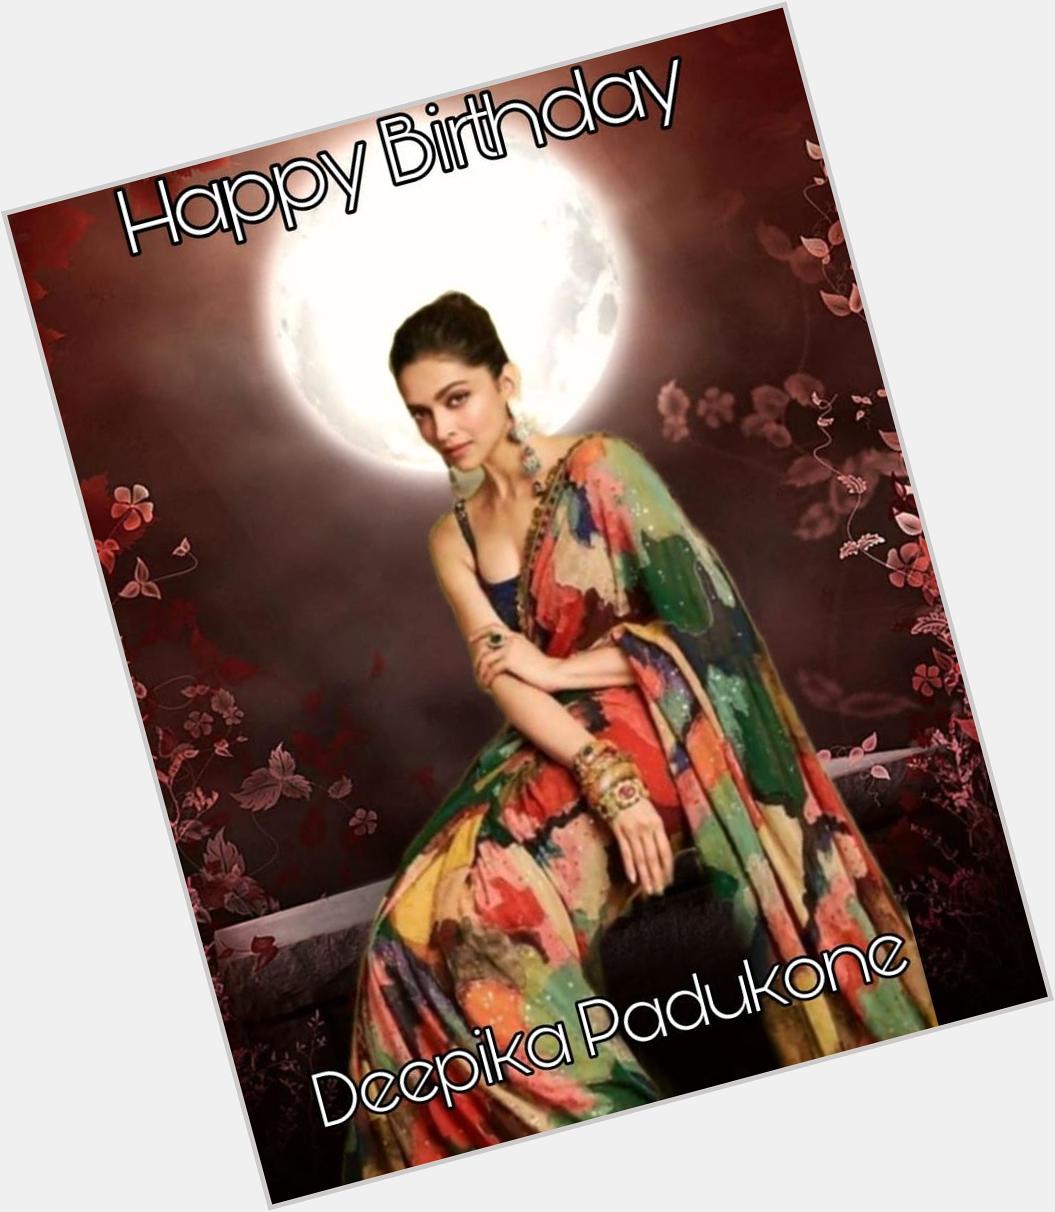 Happy BIRTHDAY 
Deepika padukone   